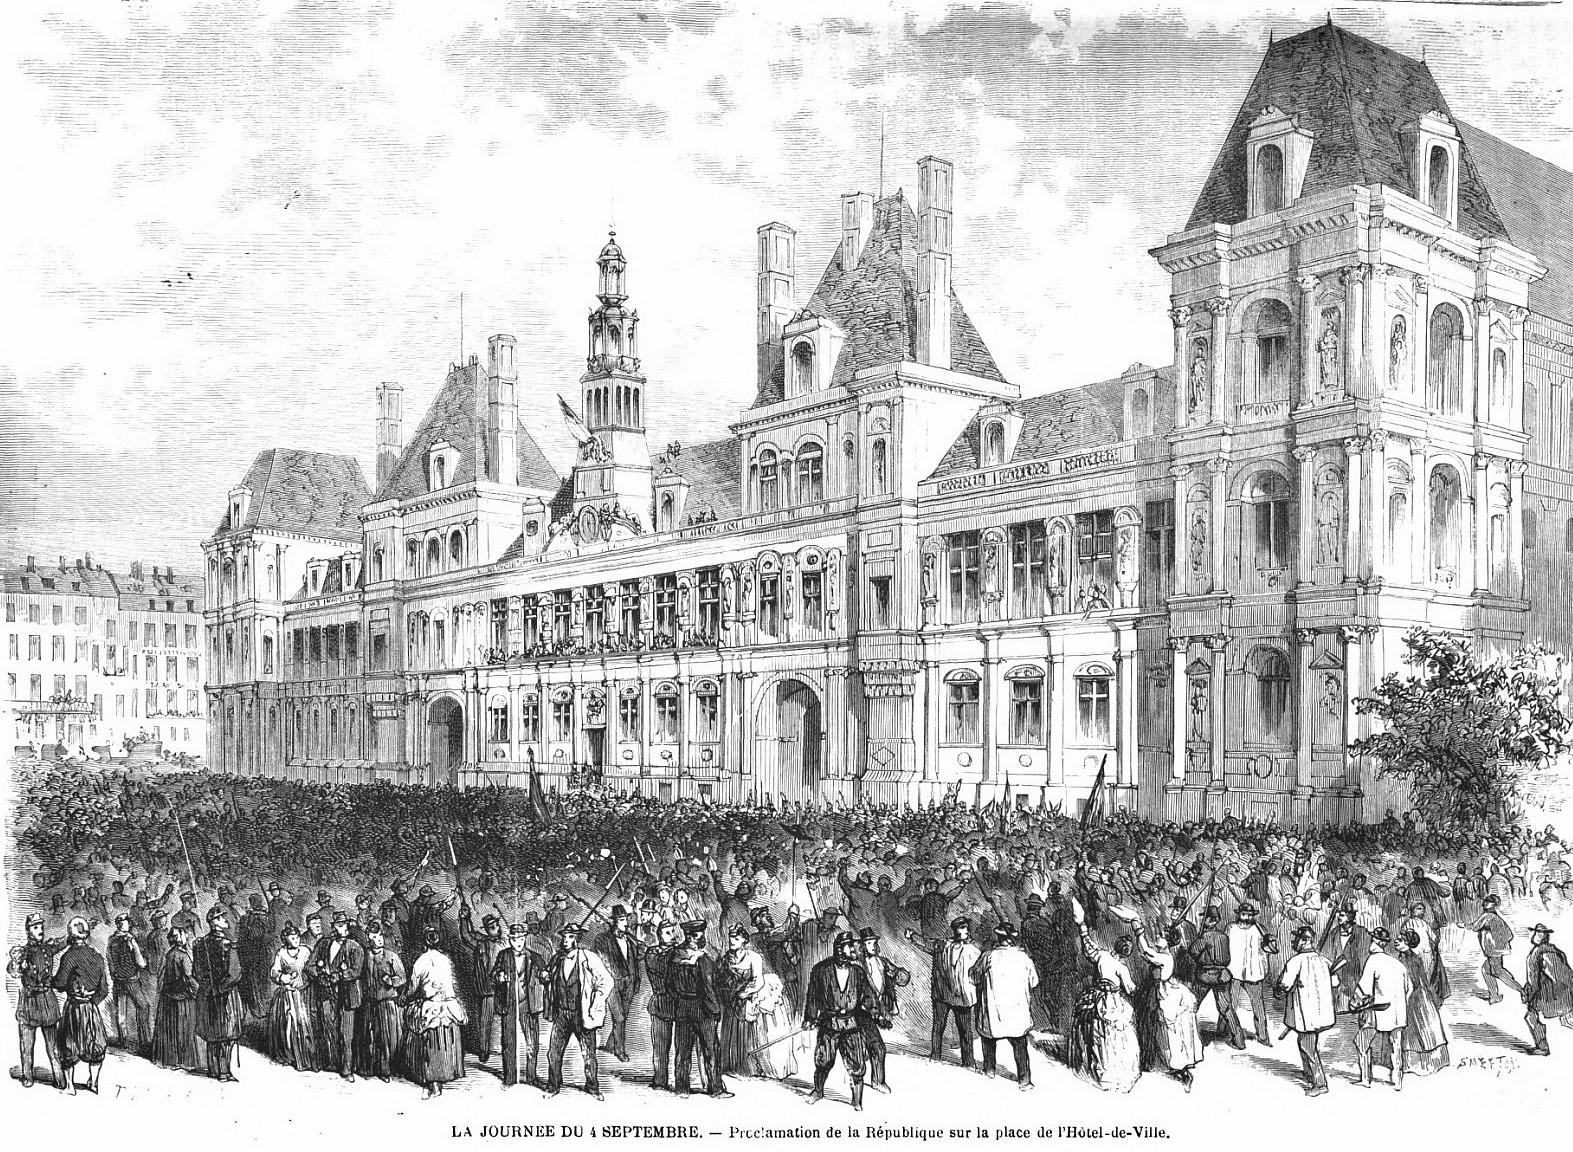 Proclamation de la République, le 4 septembre 1870, sur la place de l'Hôtel de Ville de Paris (source : L'Univers Illustré du 10 septembre 1870)